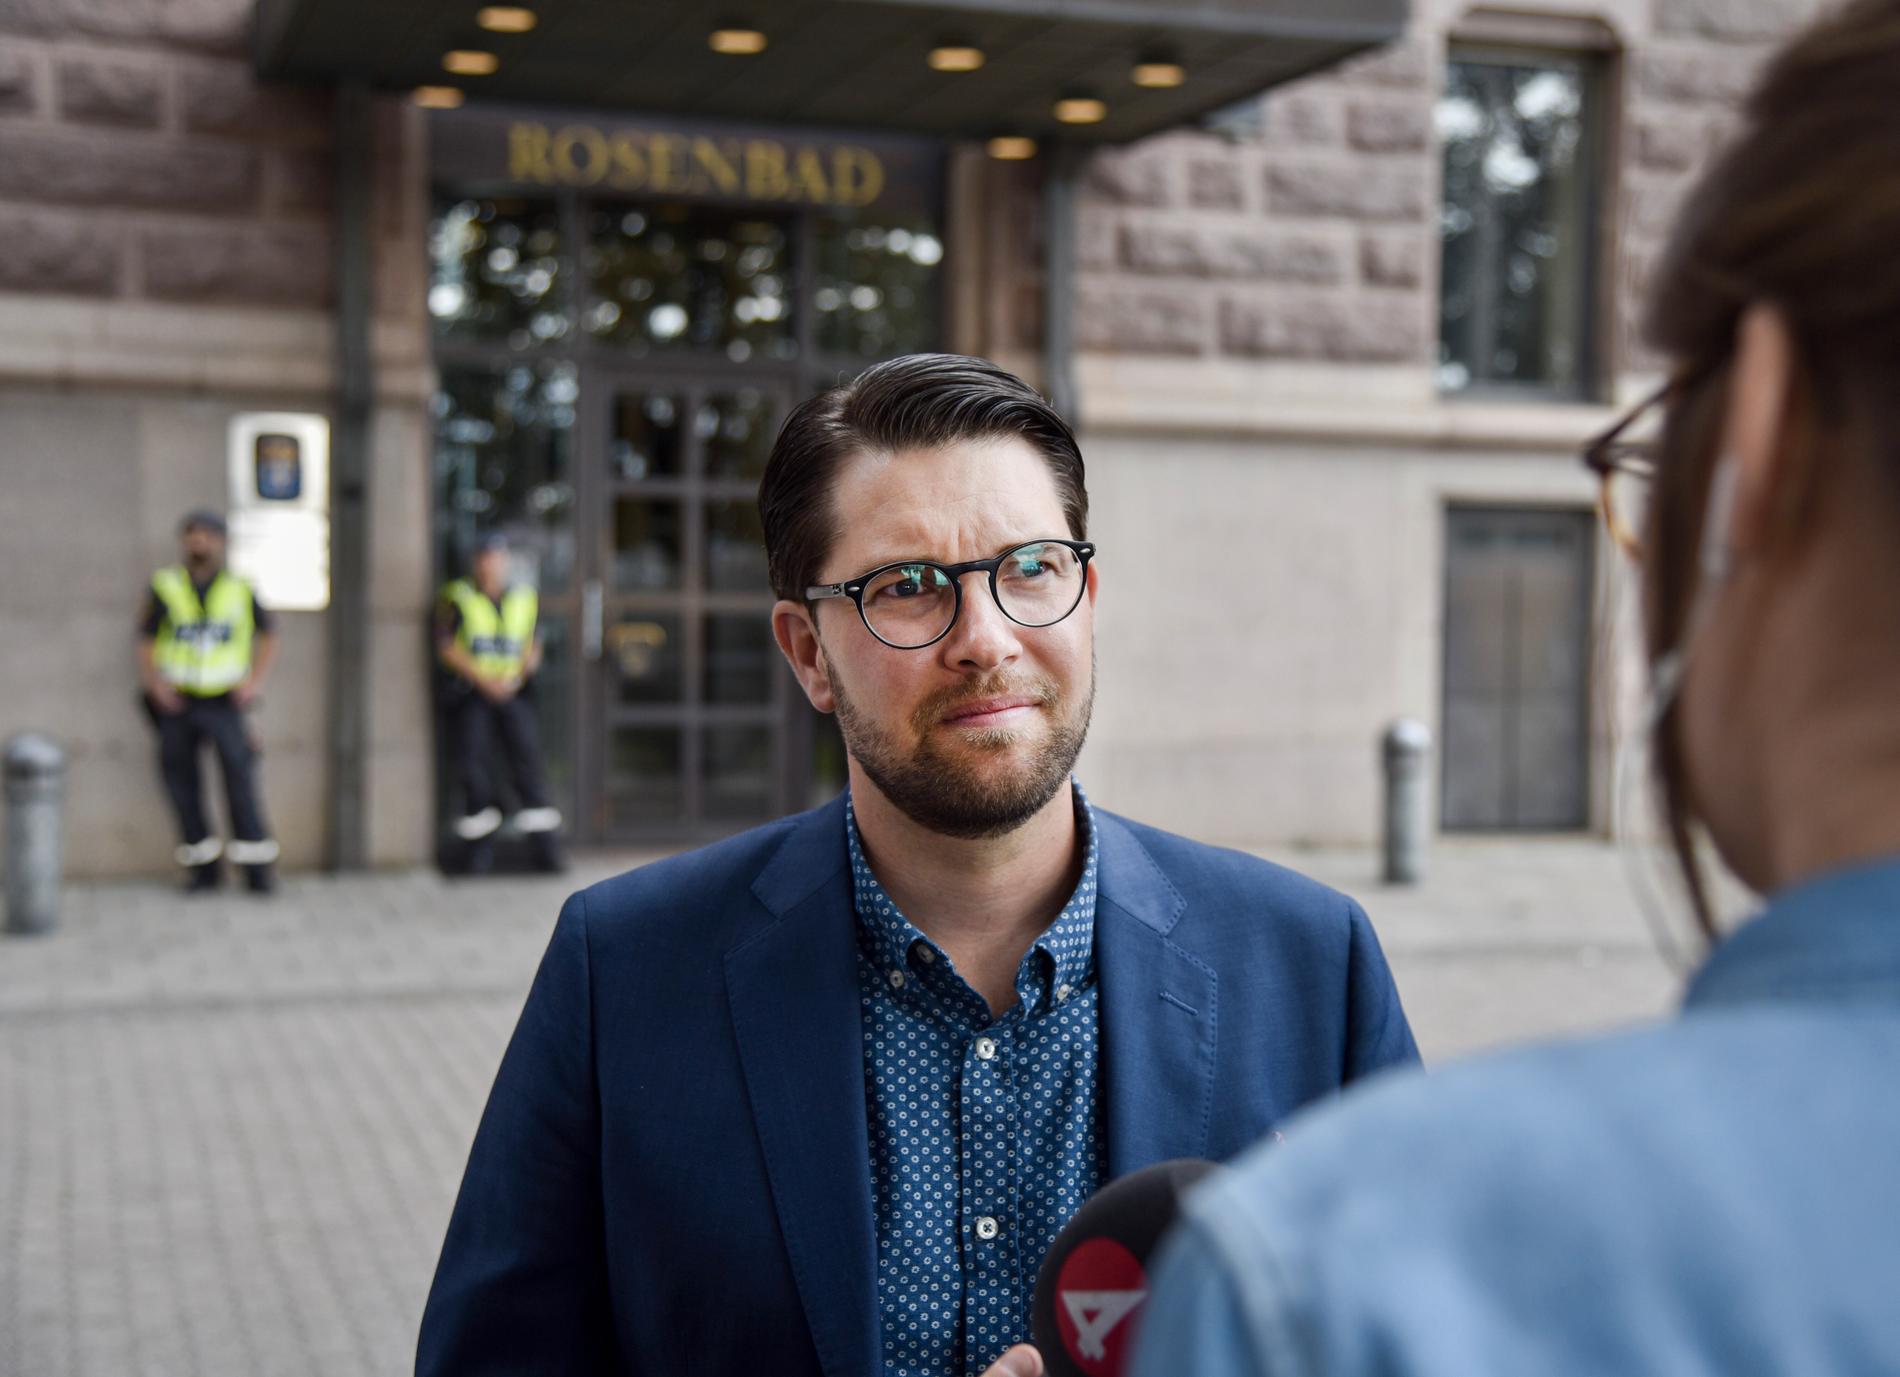 Jimmie Åkesson, Sverigedemokraternas partiledare, utanför Rosenbad. 